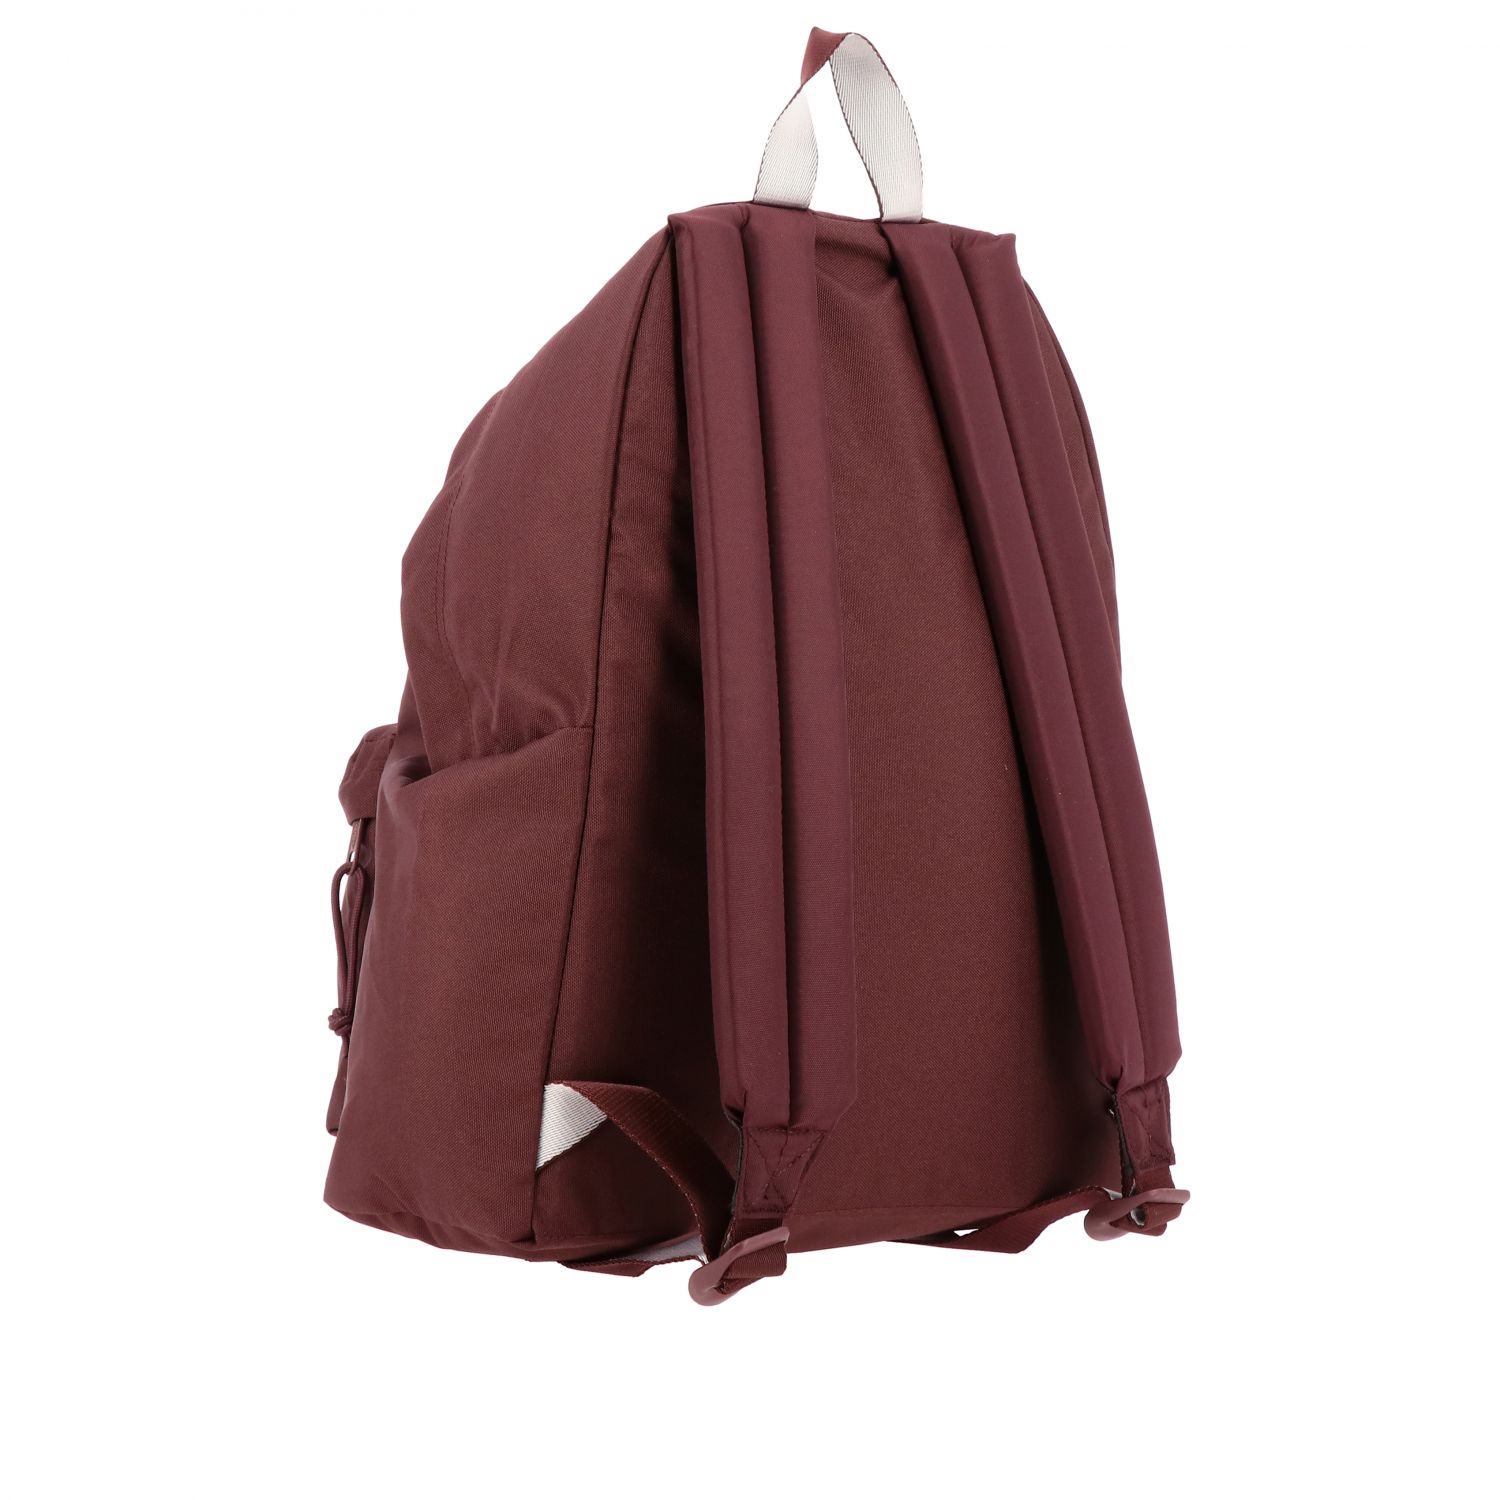 Eastpak Outlet: Shoulder bag women - Red | Backpack Eastpak EK620 ...